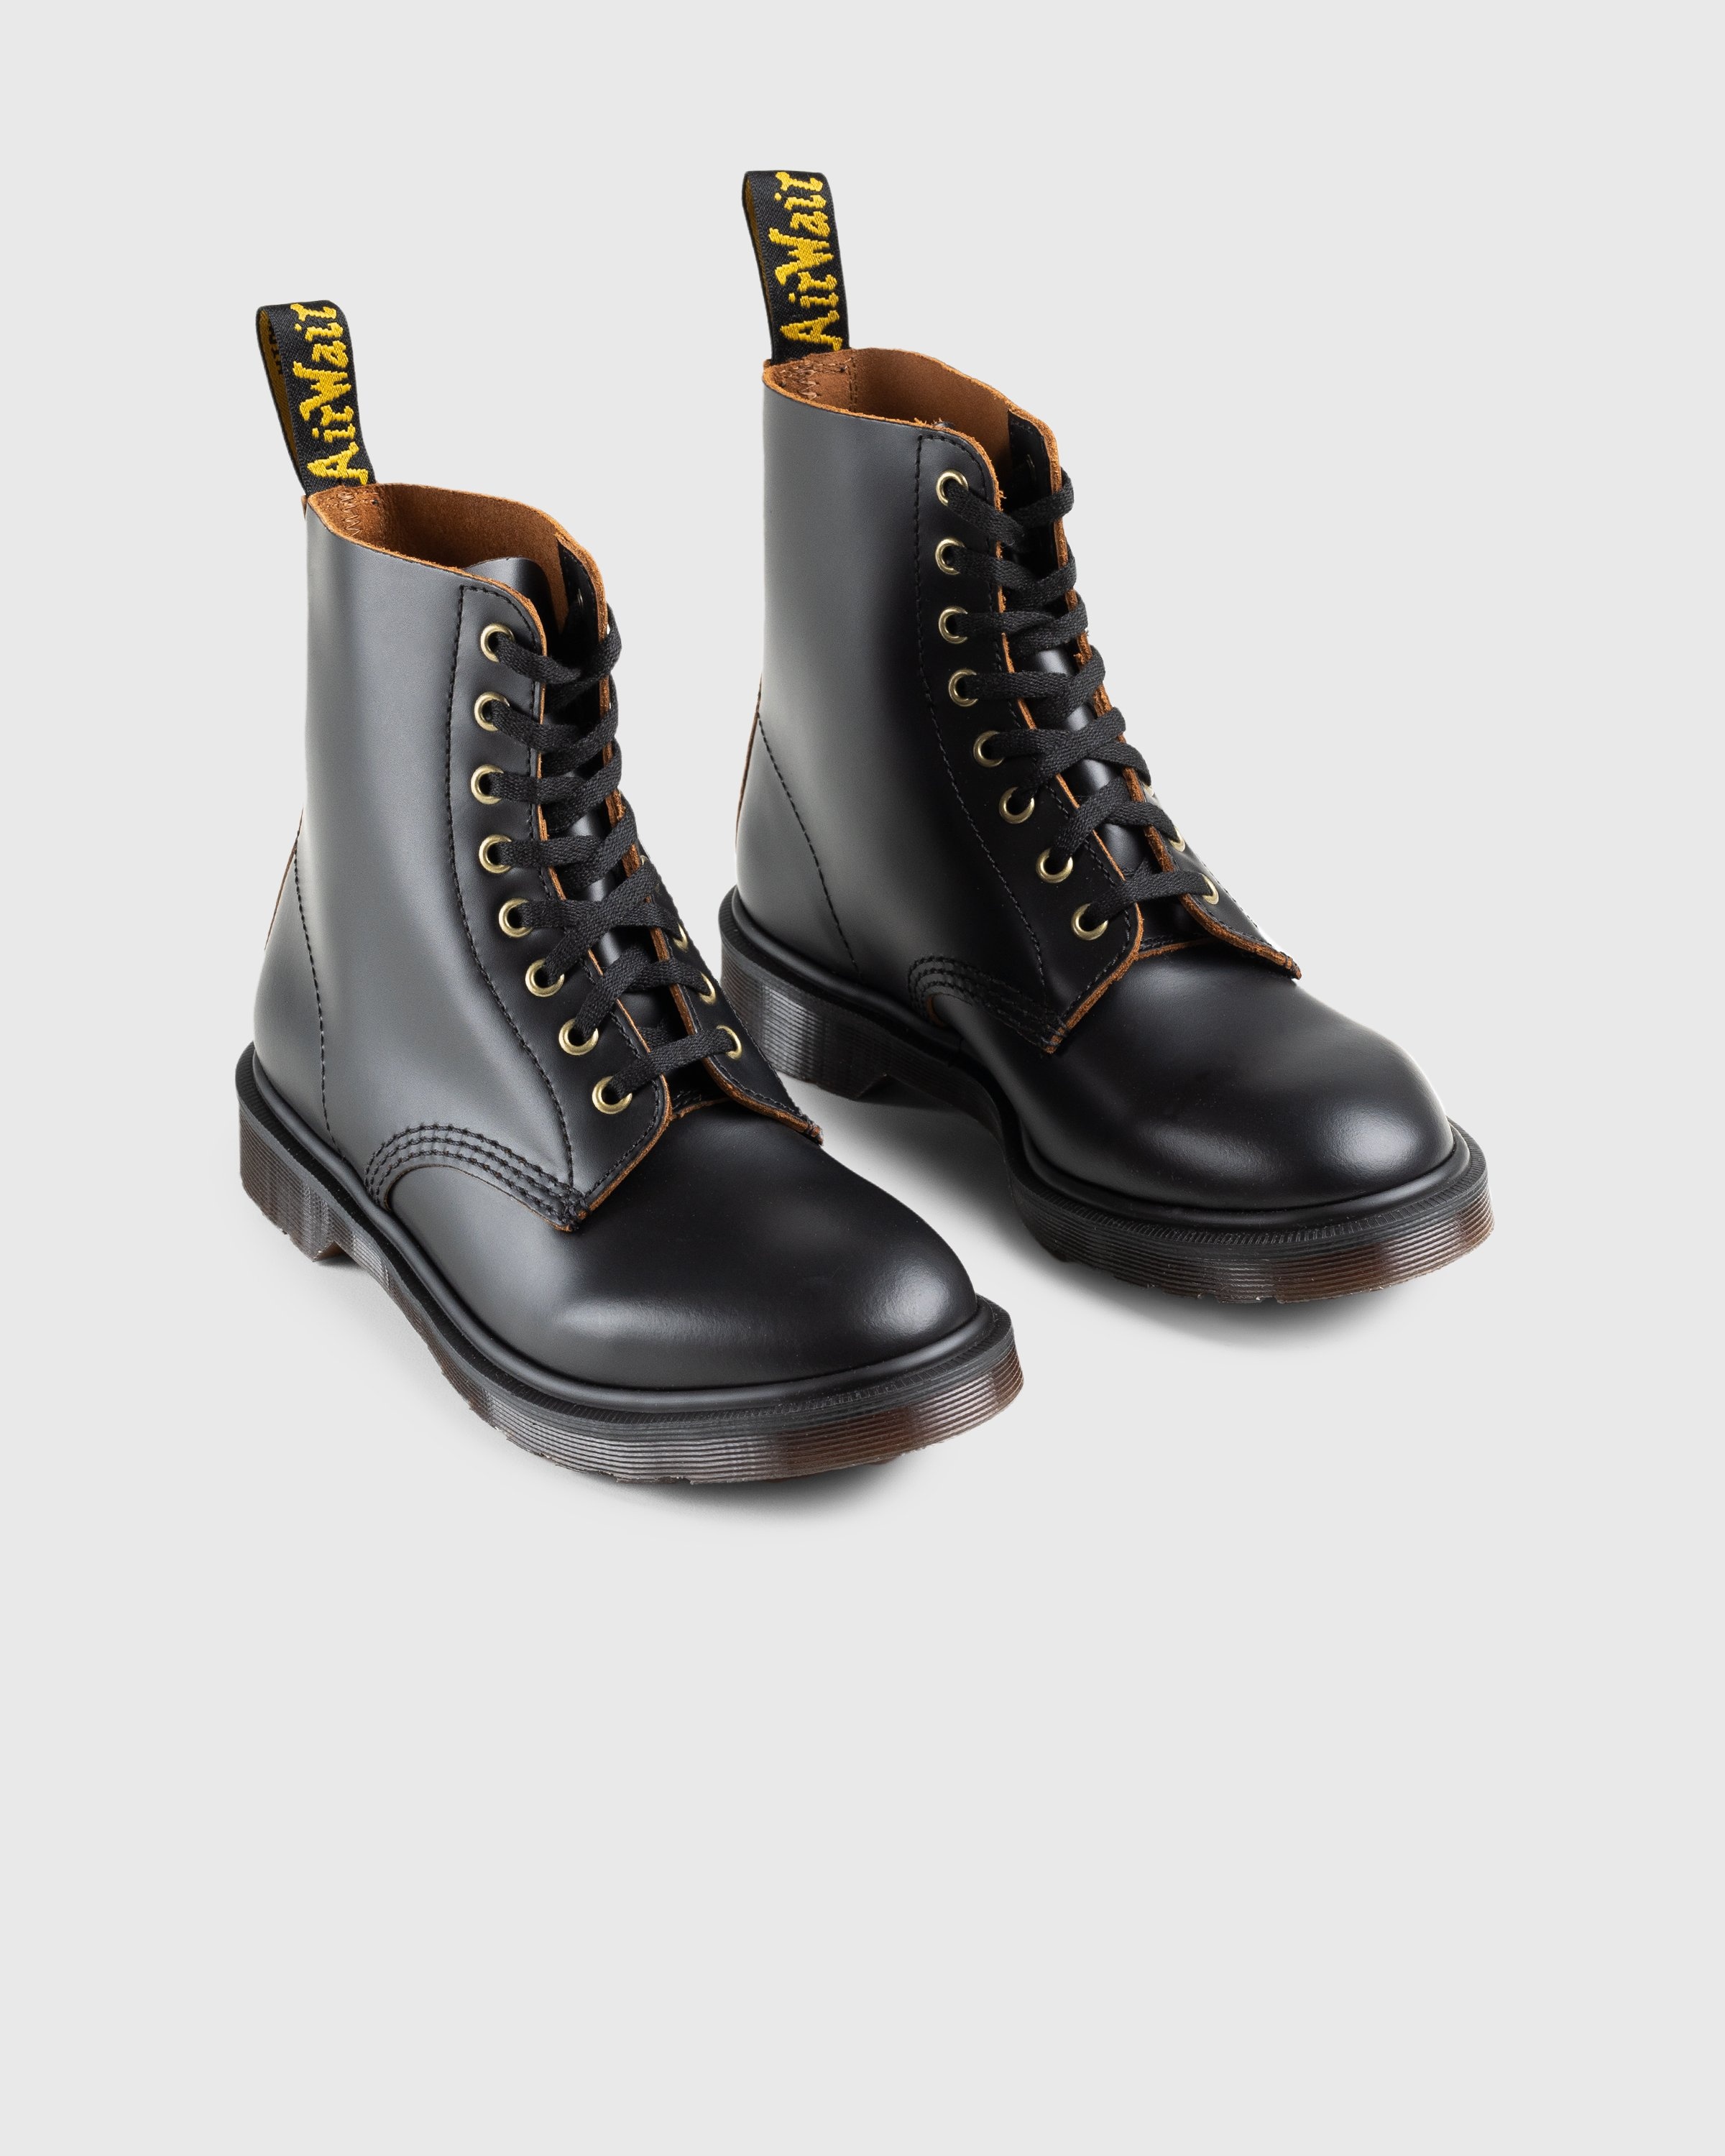 Dr. Martens – 1460 Vintage Smooth Black - Laced Up Boots - Black - Image 3